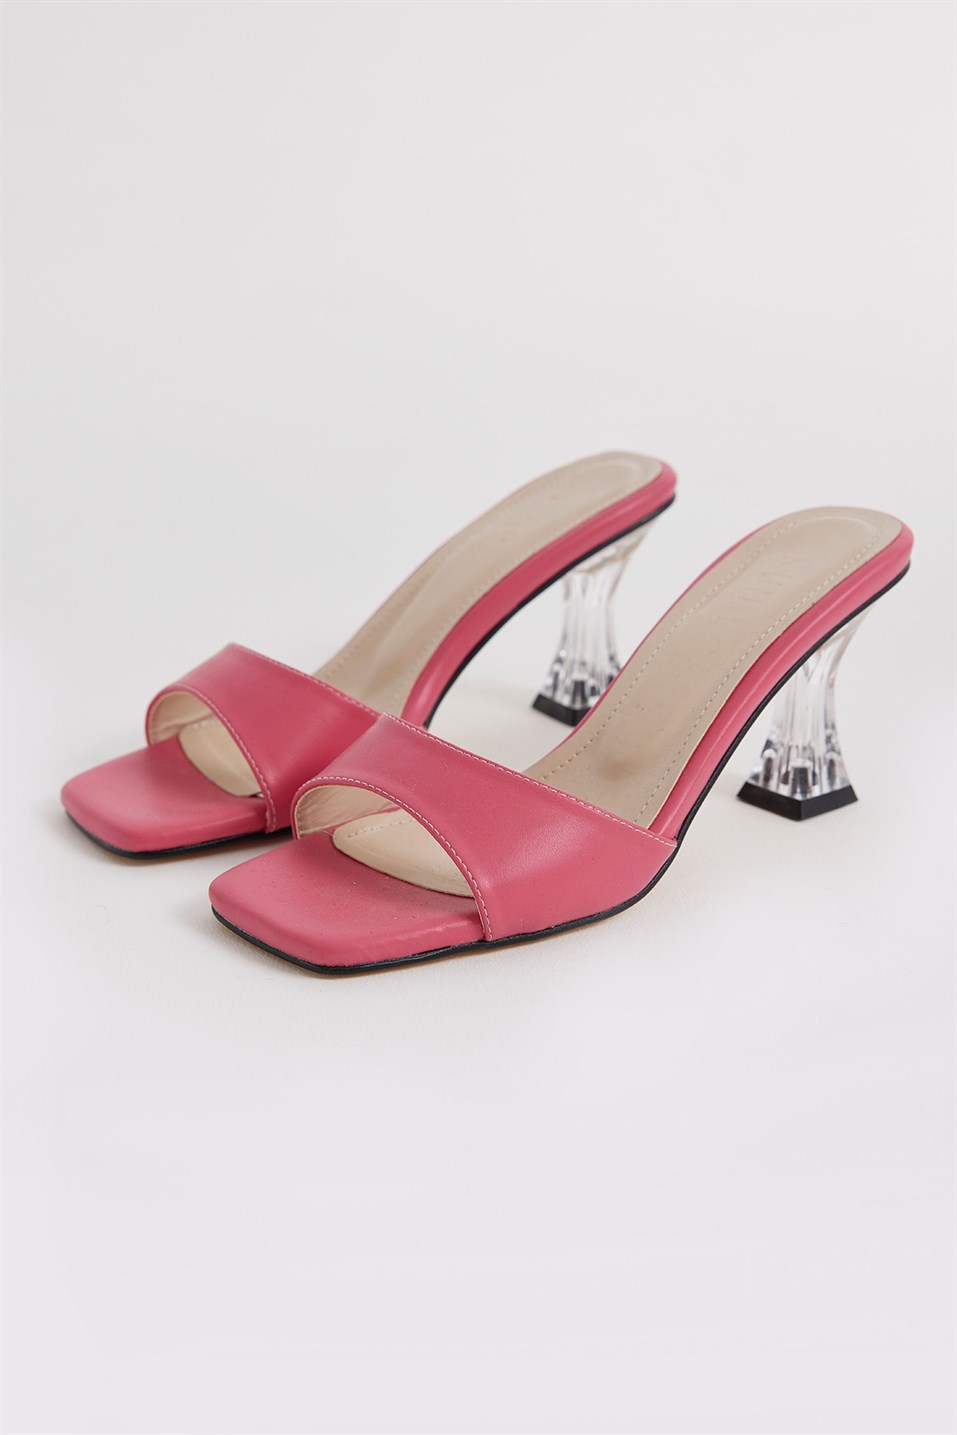 Pink Oval Banded Heels Sandals